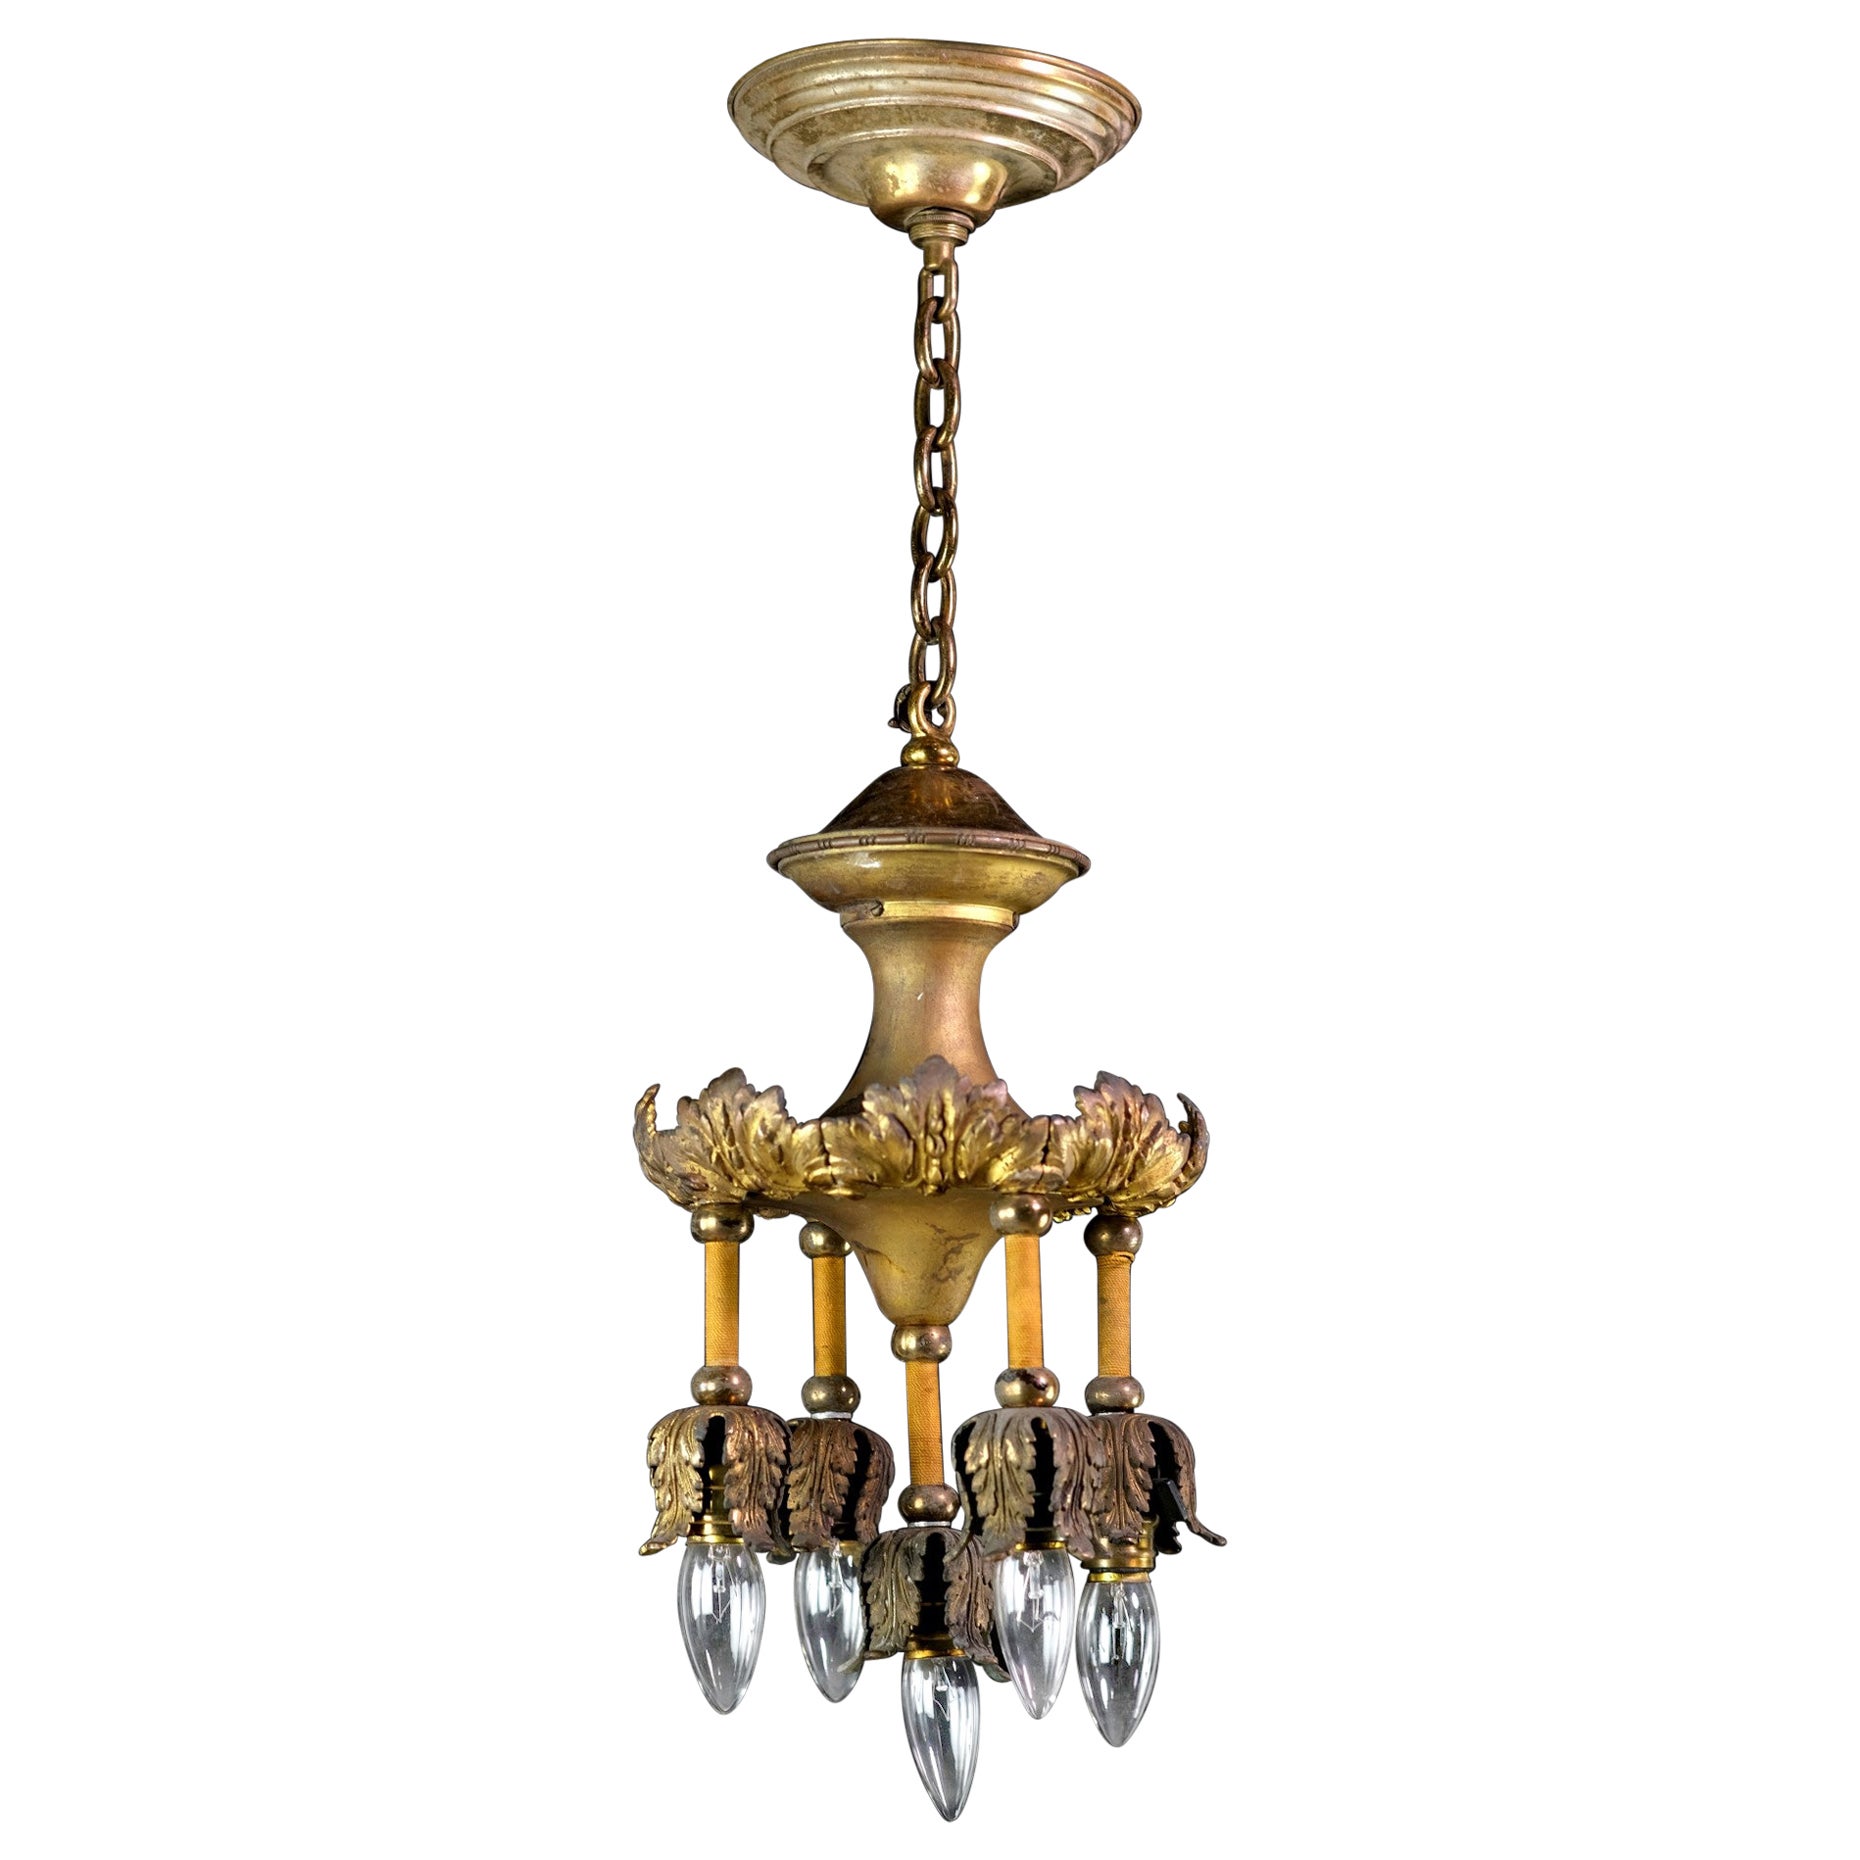 Gilded Bronze 5-Down Light Chandelier w/ Foliage Details Petite Antique For Sale